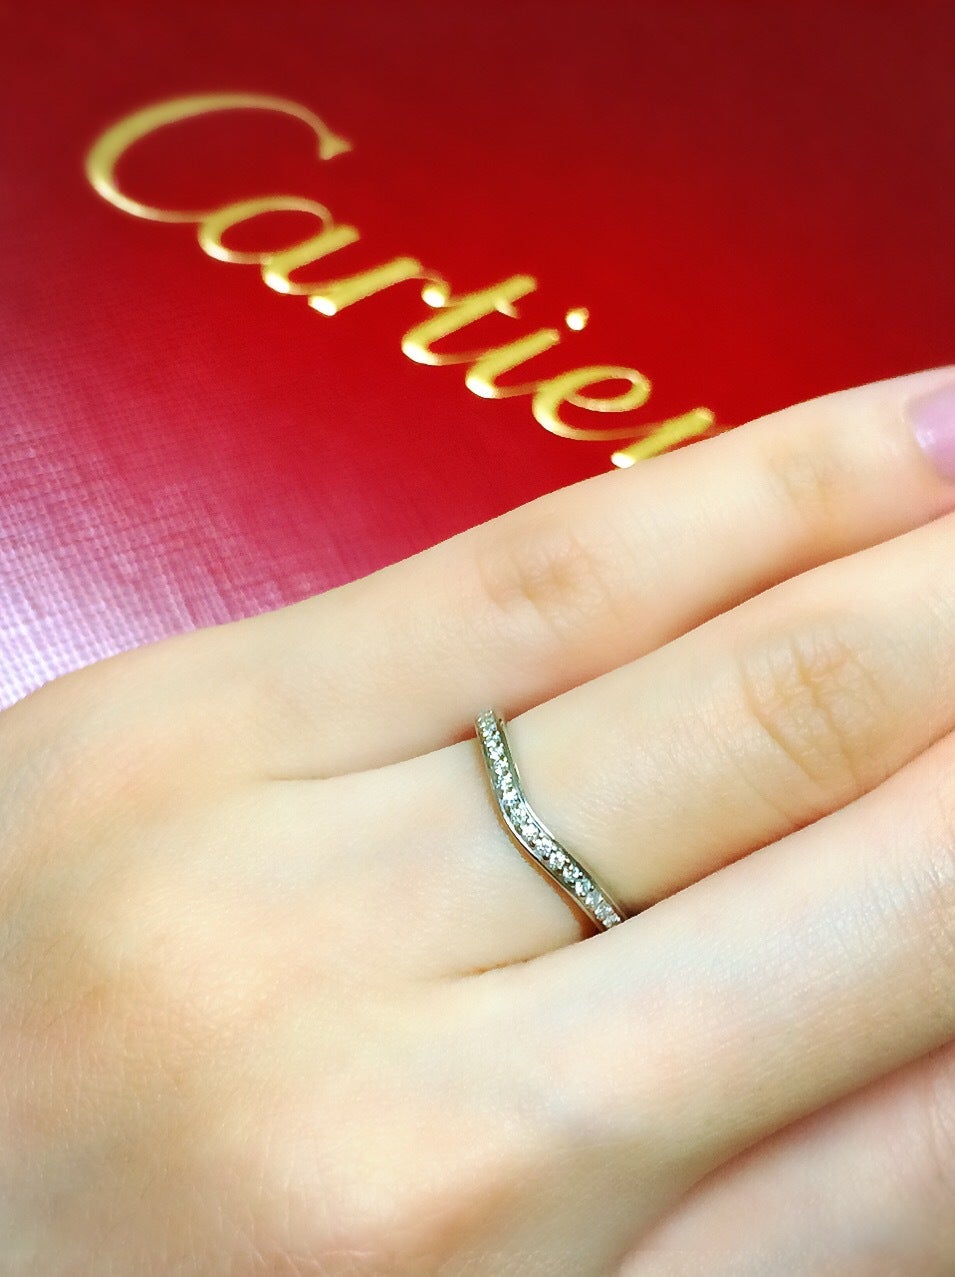 カルティエ♡バレリーナ♡ハーフエタニティ♡ | カルティエで結婚指輪を買ってもらったお話